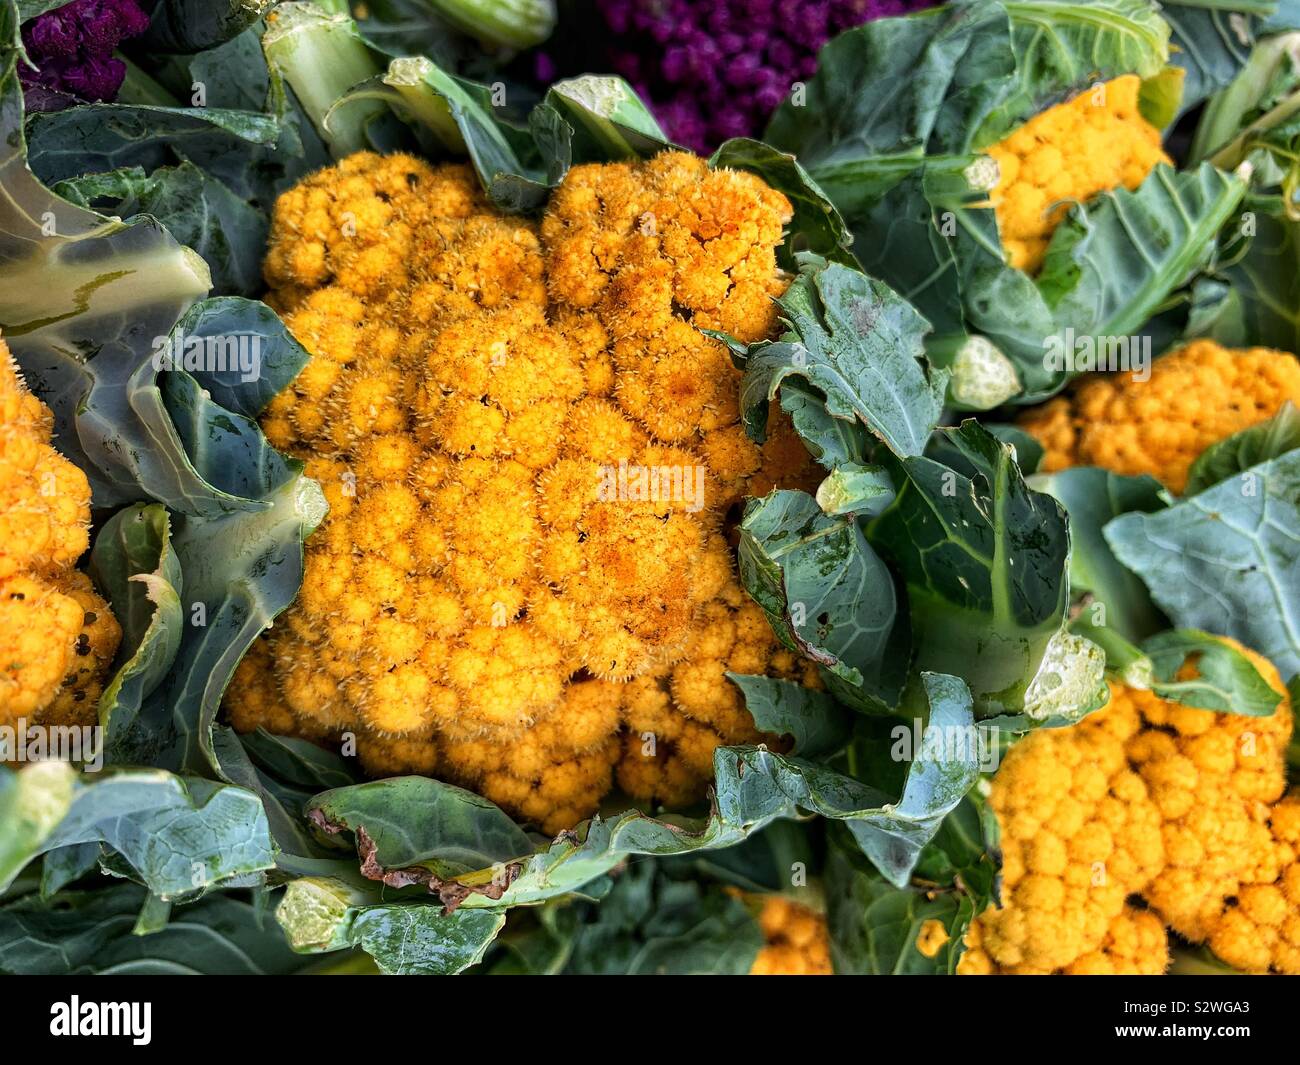 Yellow cauliflower heads. Stock Photo